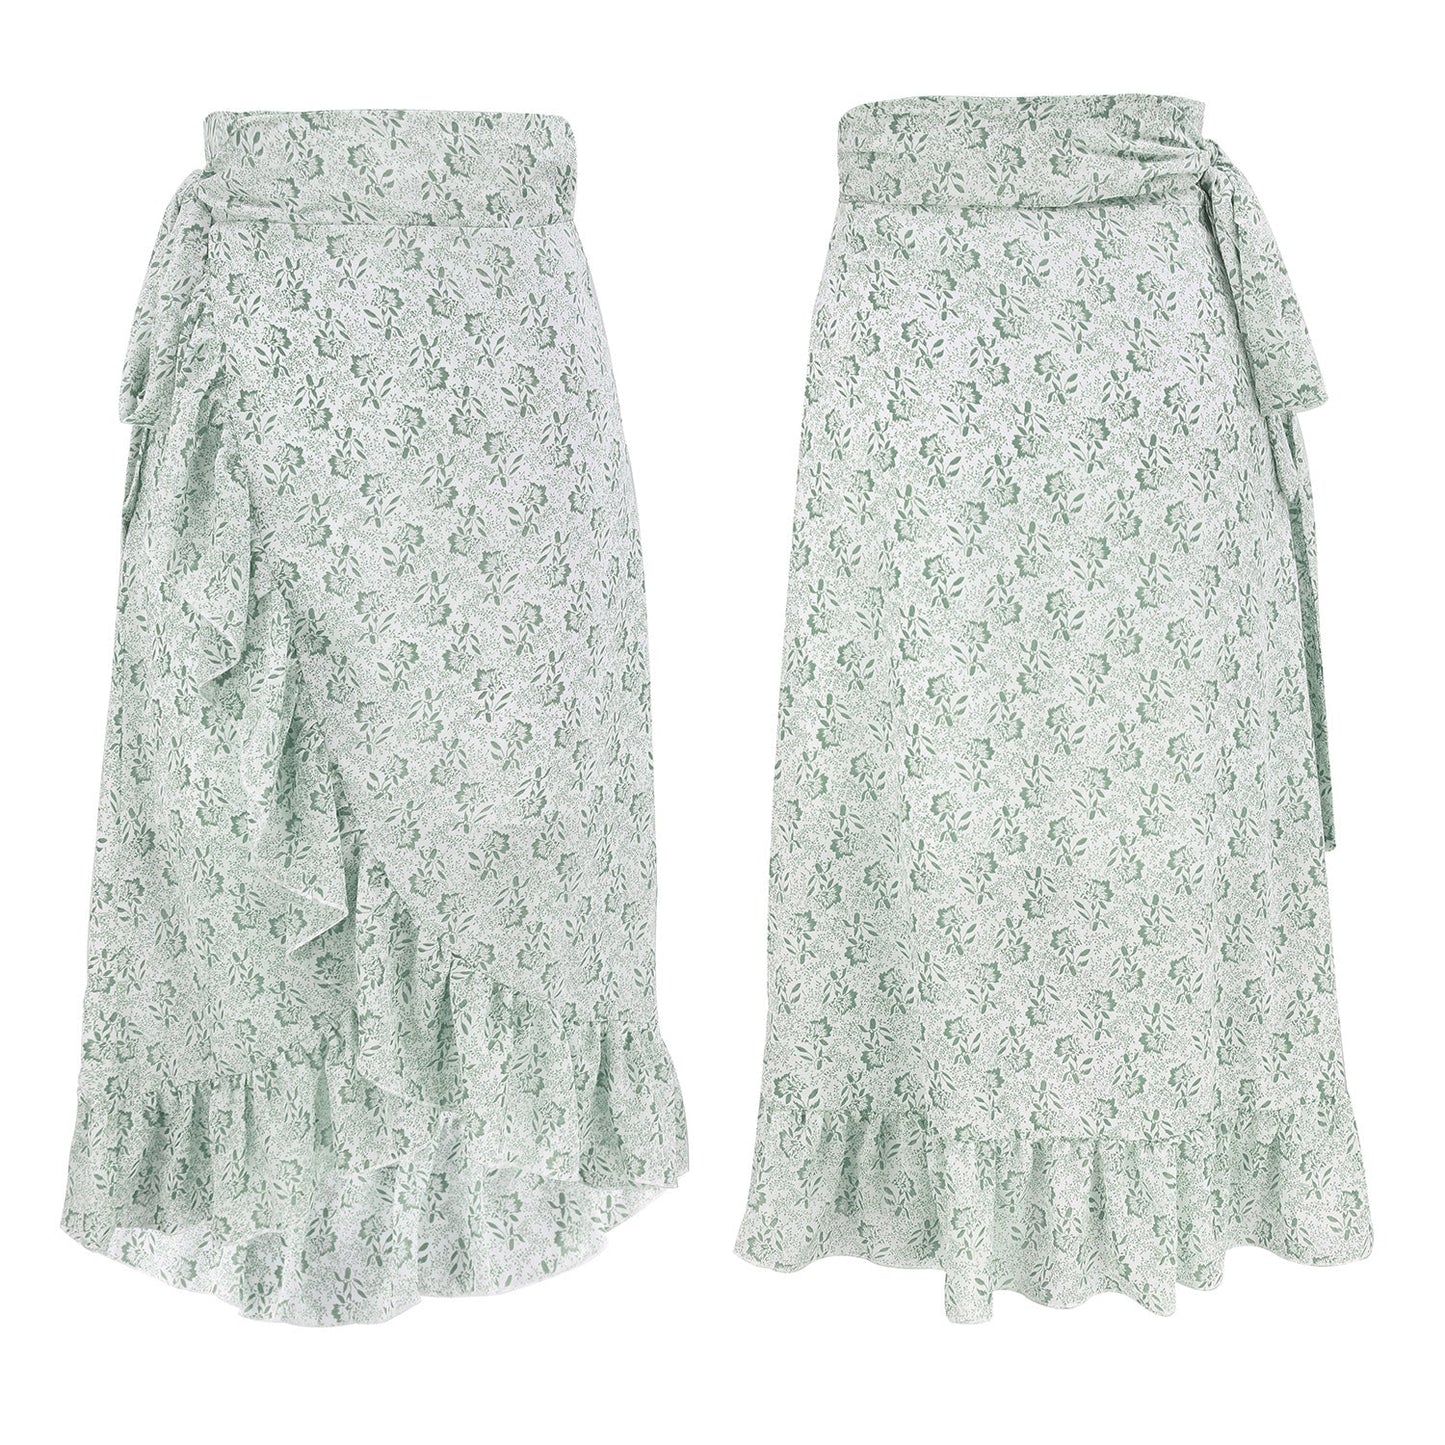 Sexy Summer Irregular Chiffon Skrts-Skirts-Green-S-Free Shipping at meselling99